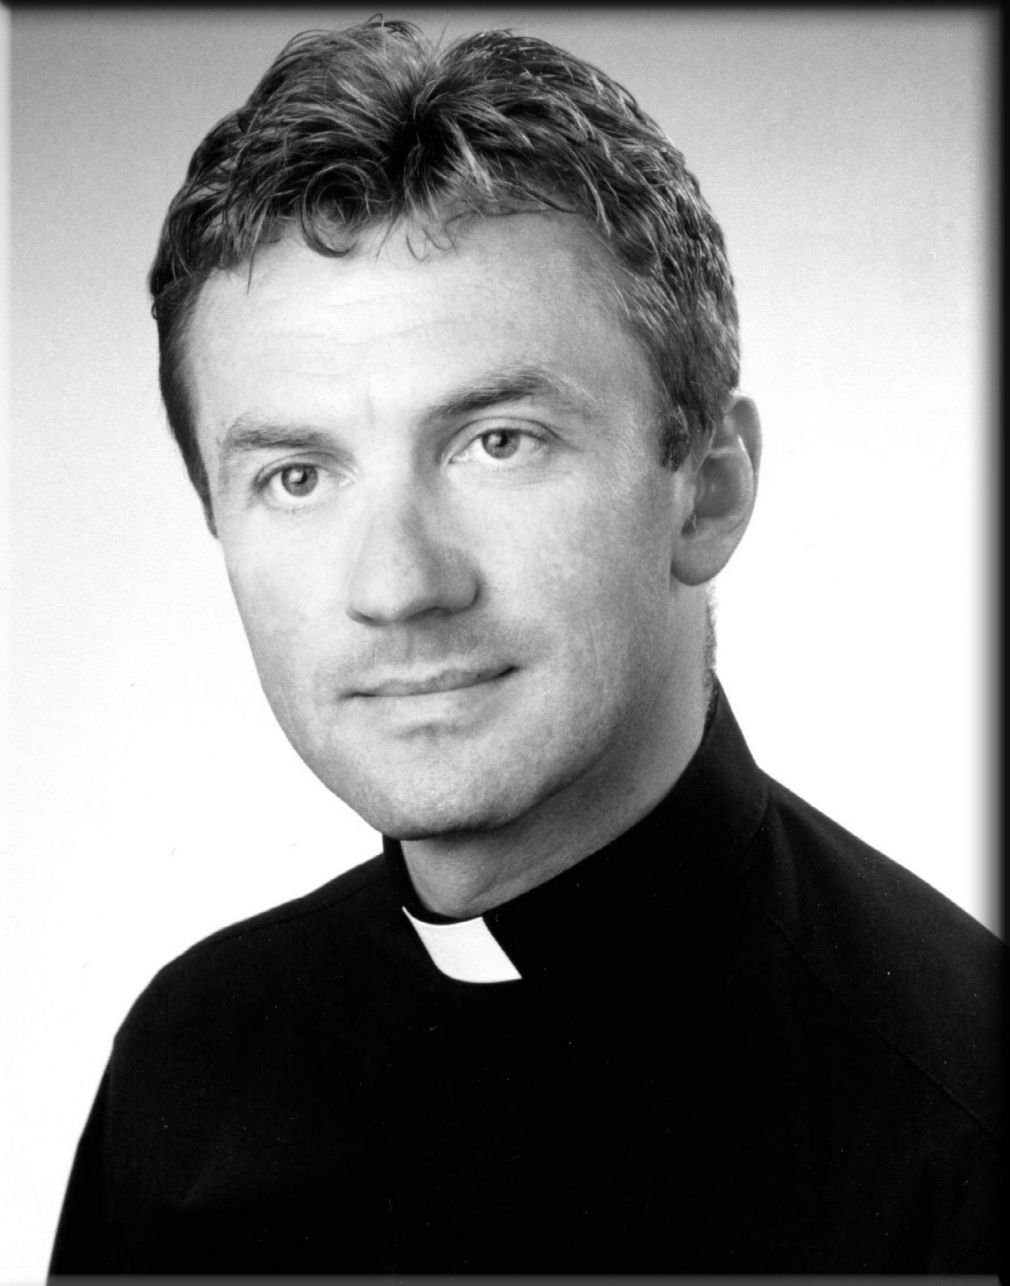 Ks. Zbigniew Antosz zginął tragicznie 20 lipca 2007 r. w Alpach szwajcarskich, foto: materiał nadesłany